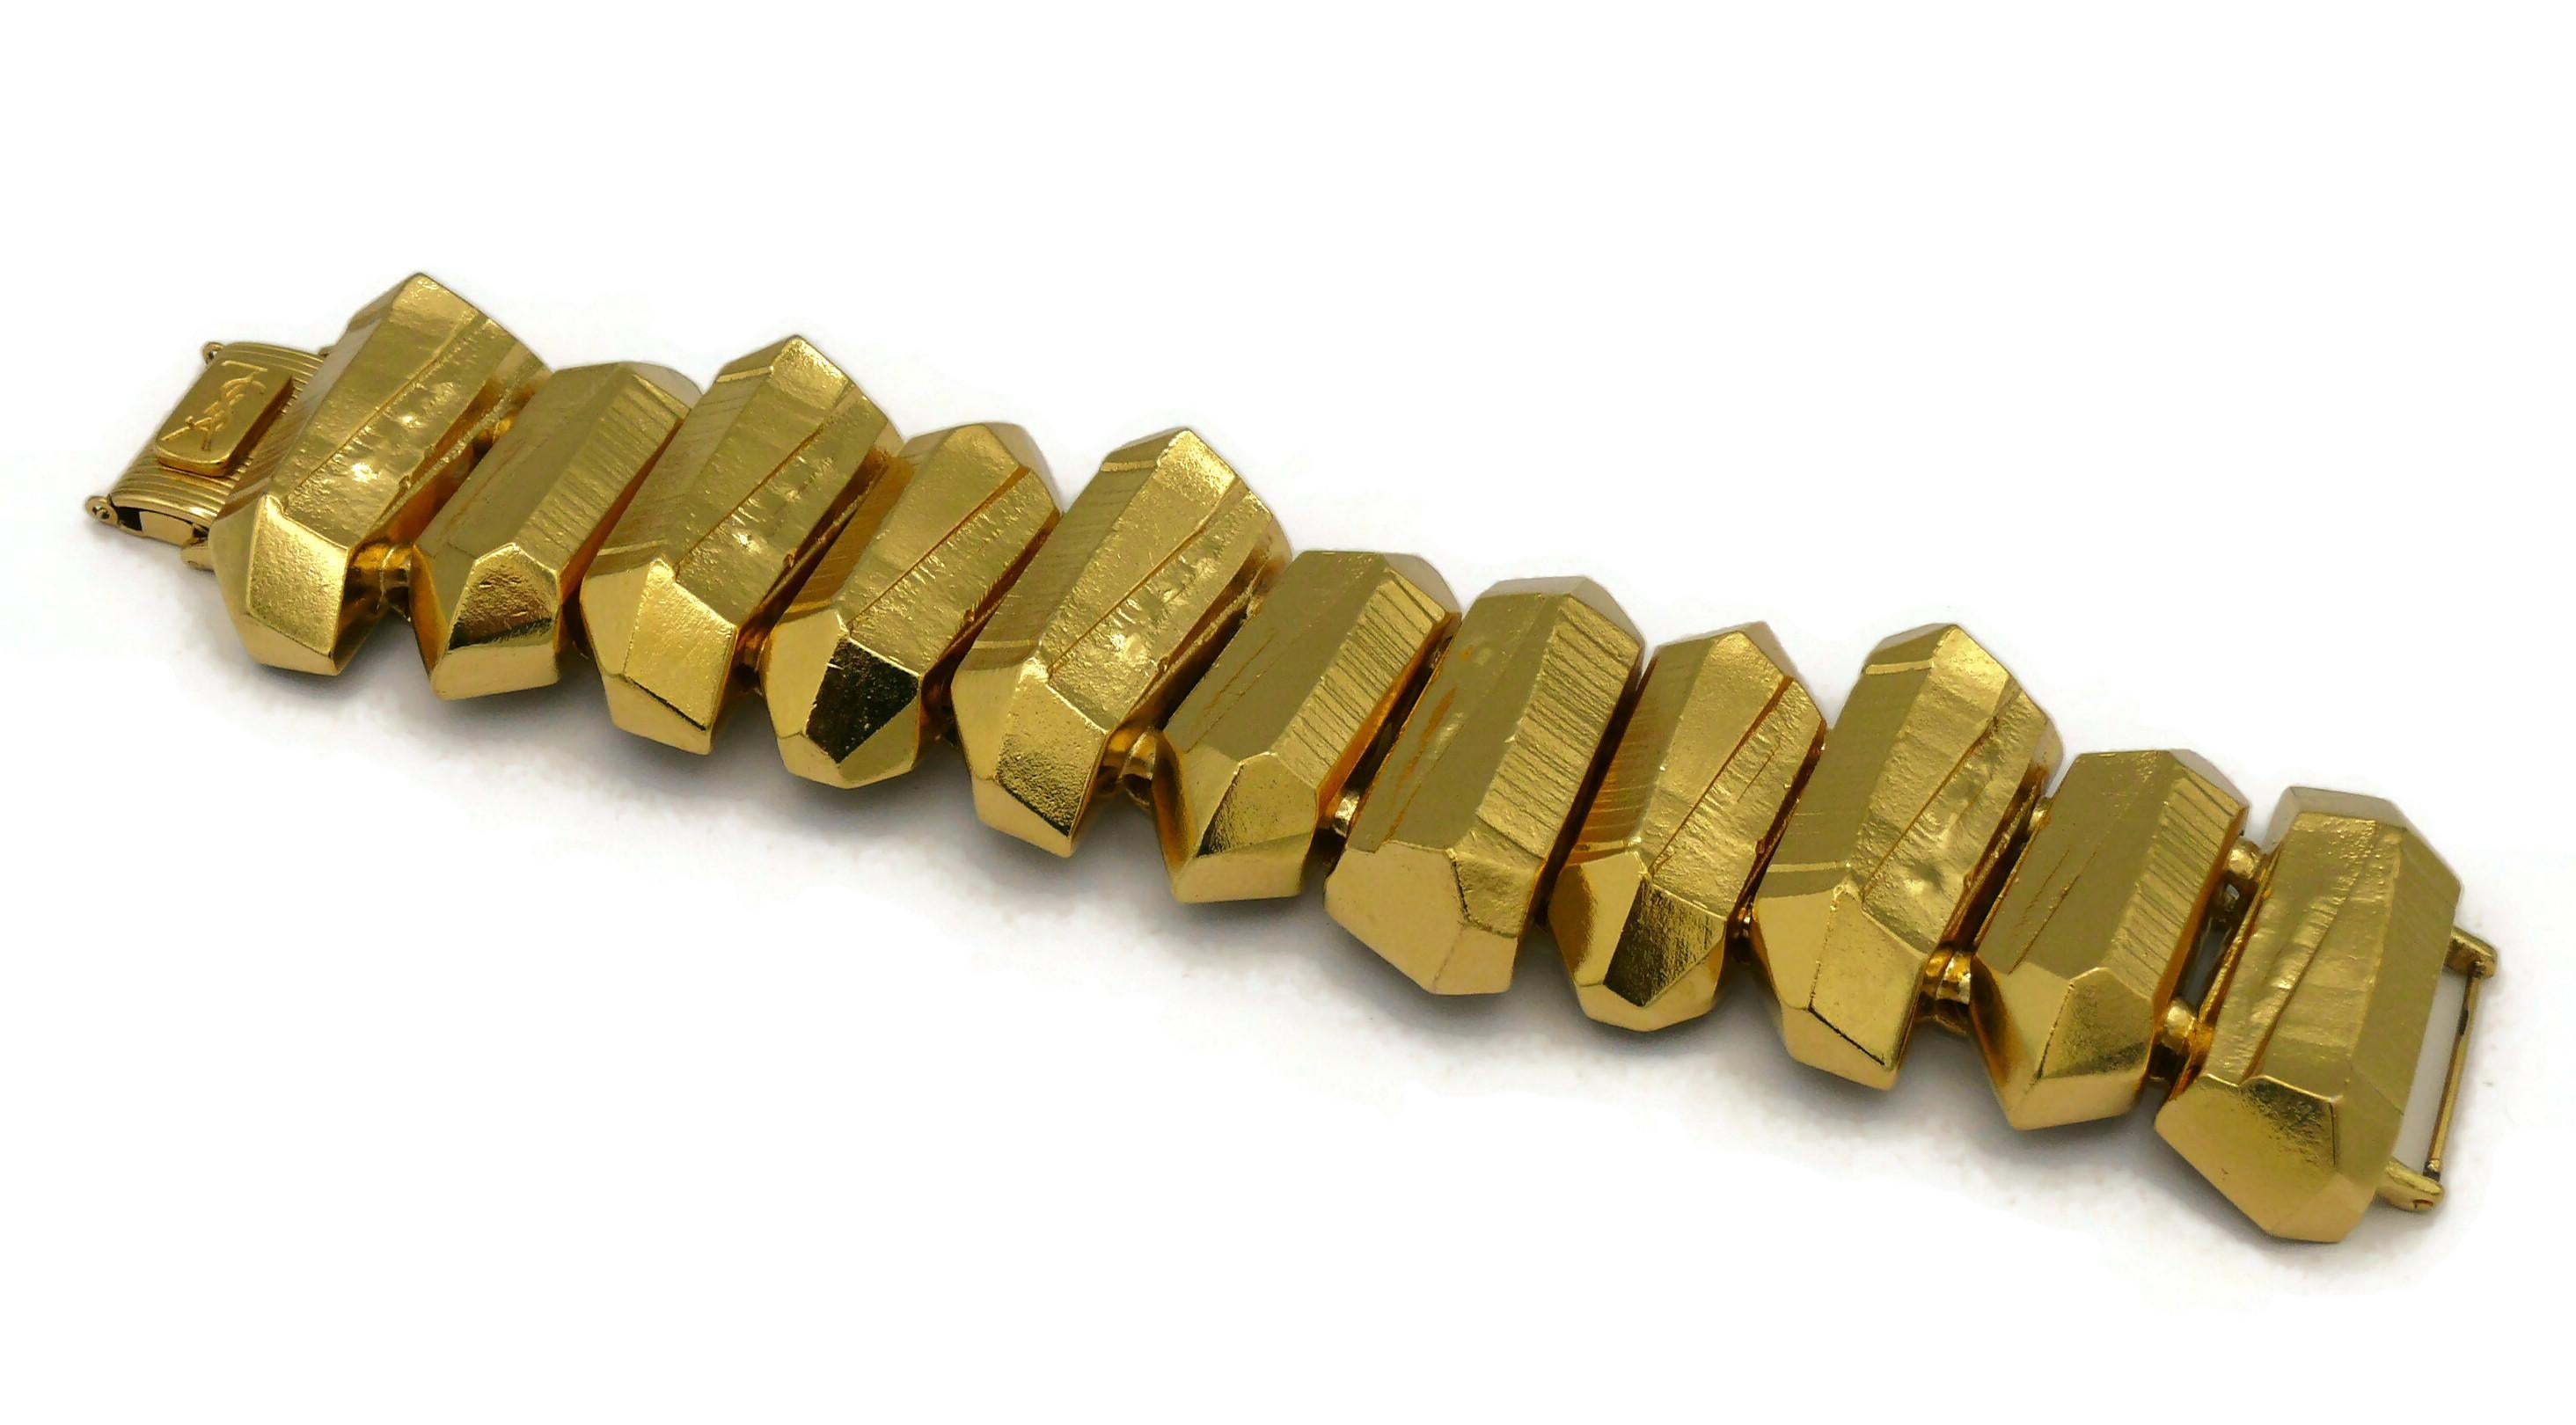 YVES SAINT LAURENT YSL Vintage Gold Tone Rock Crystal Prism Design Cuff Bracelet For Sale 6